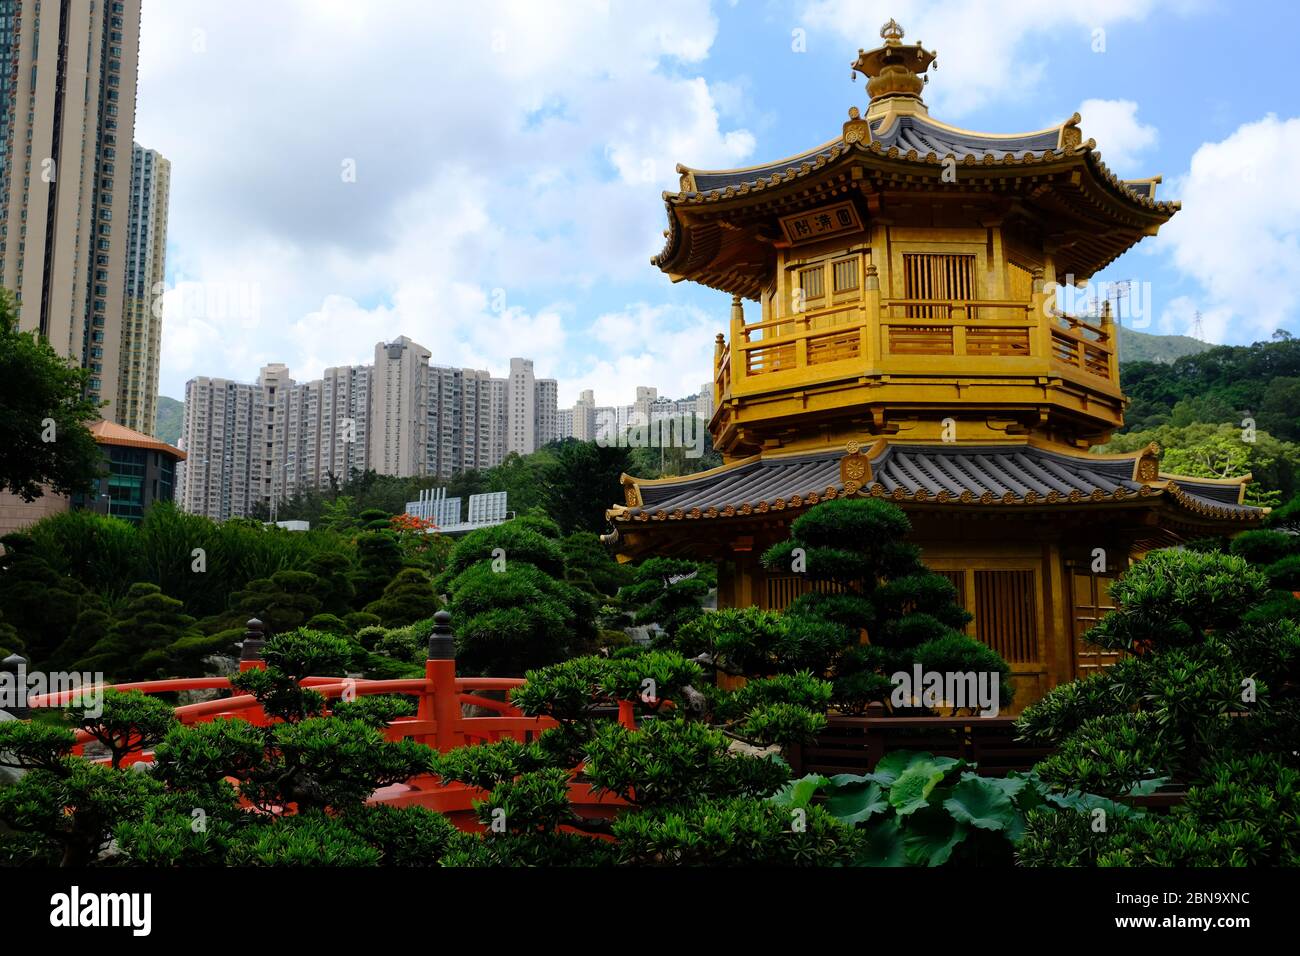 Hong Kong China  - Golden Pagoda in Nan Lian Garden Stock Photo